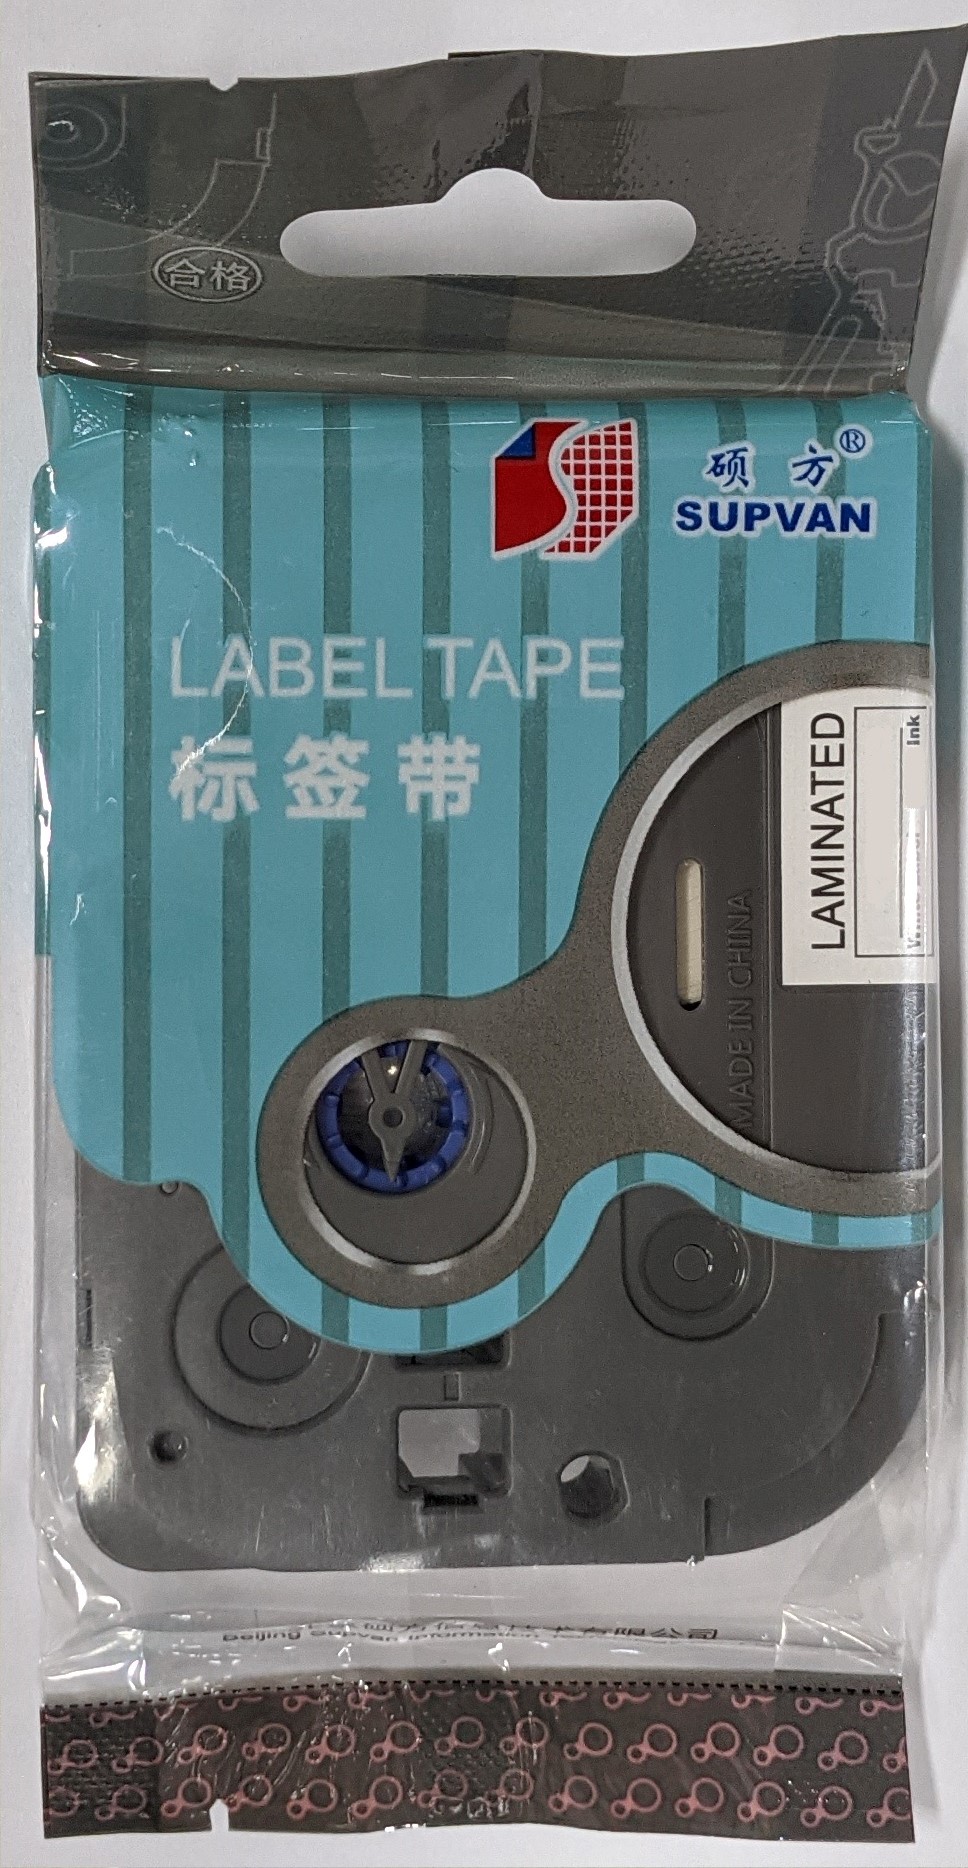 Samolepicí páska Supvan L-W131E, 12mm x 8m, černý tisk / průhledný podklad, ovinovací, nelaminovaná